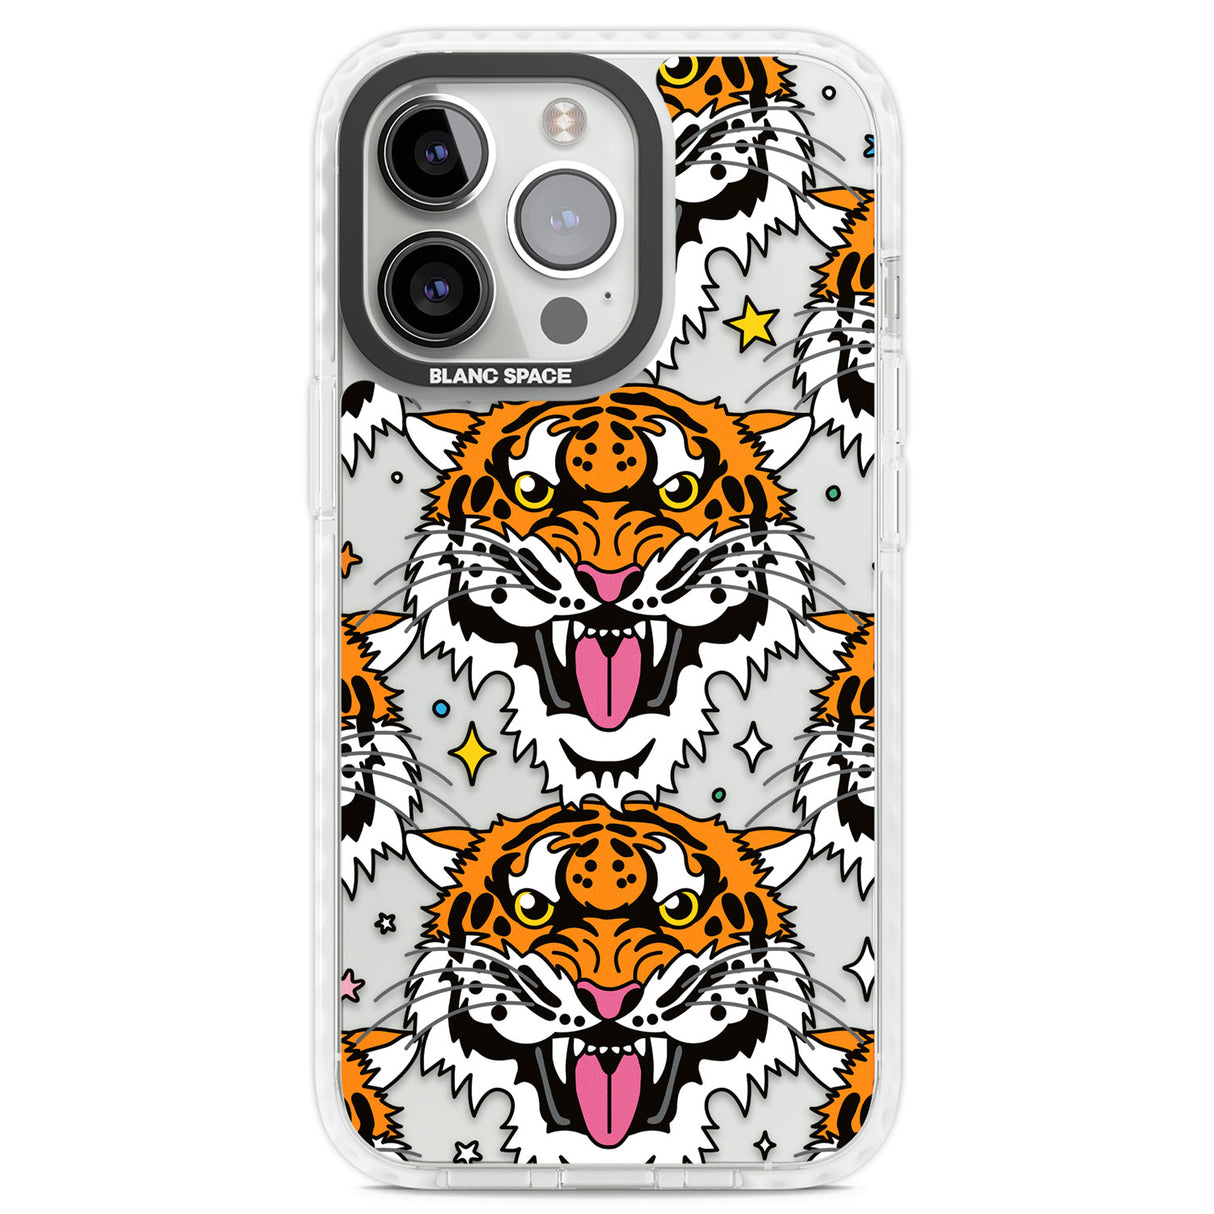 Fierce Jungle Tigers Clear Impact Phone Case for iPhone 13 Pro, iPhone 14 Pro, iPhone 15 Pro